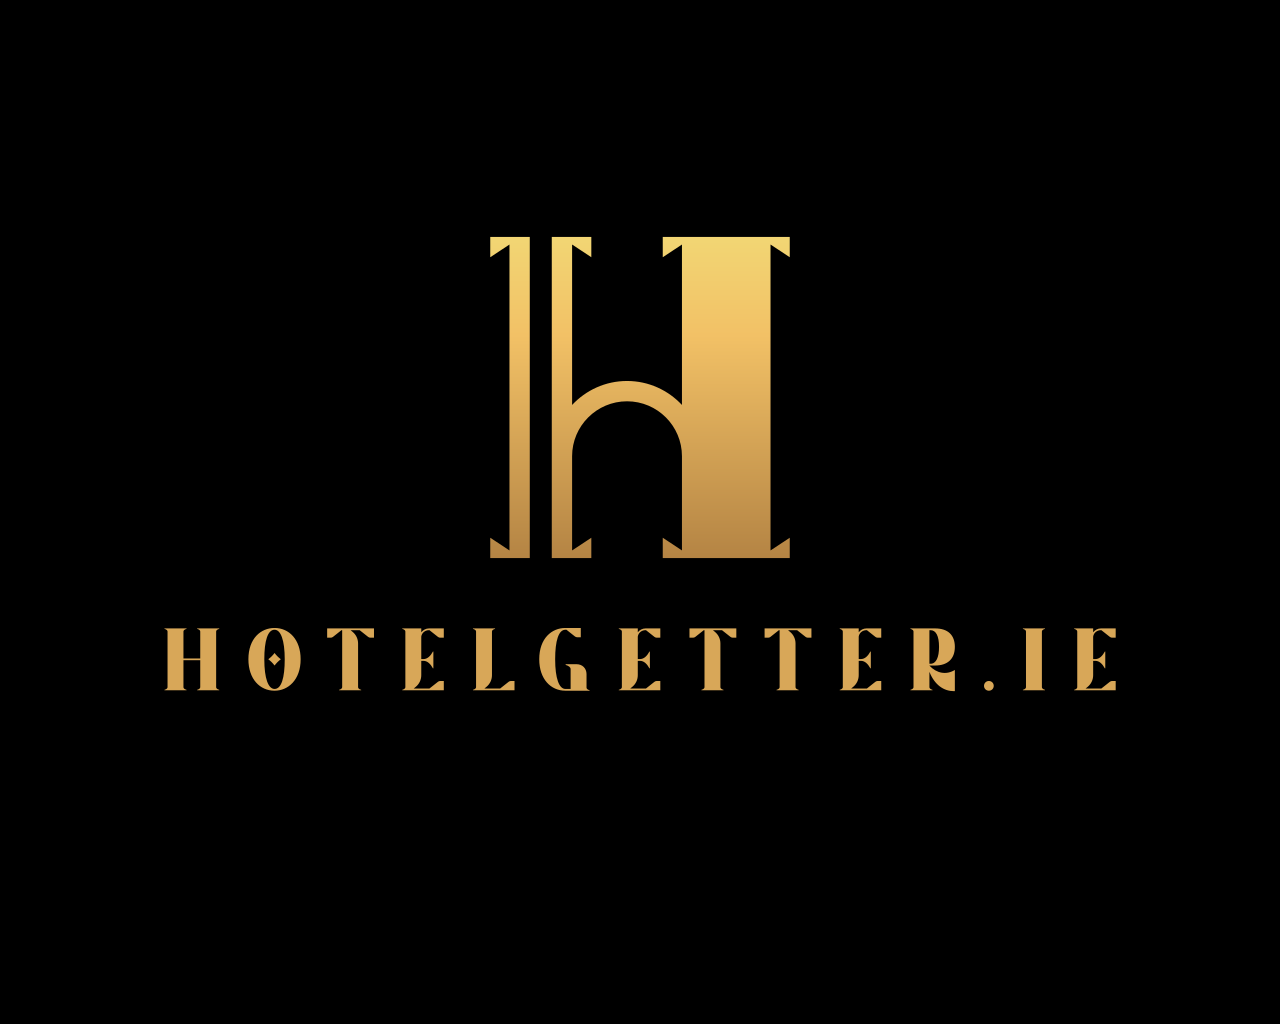 HotelGetter.ie